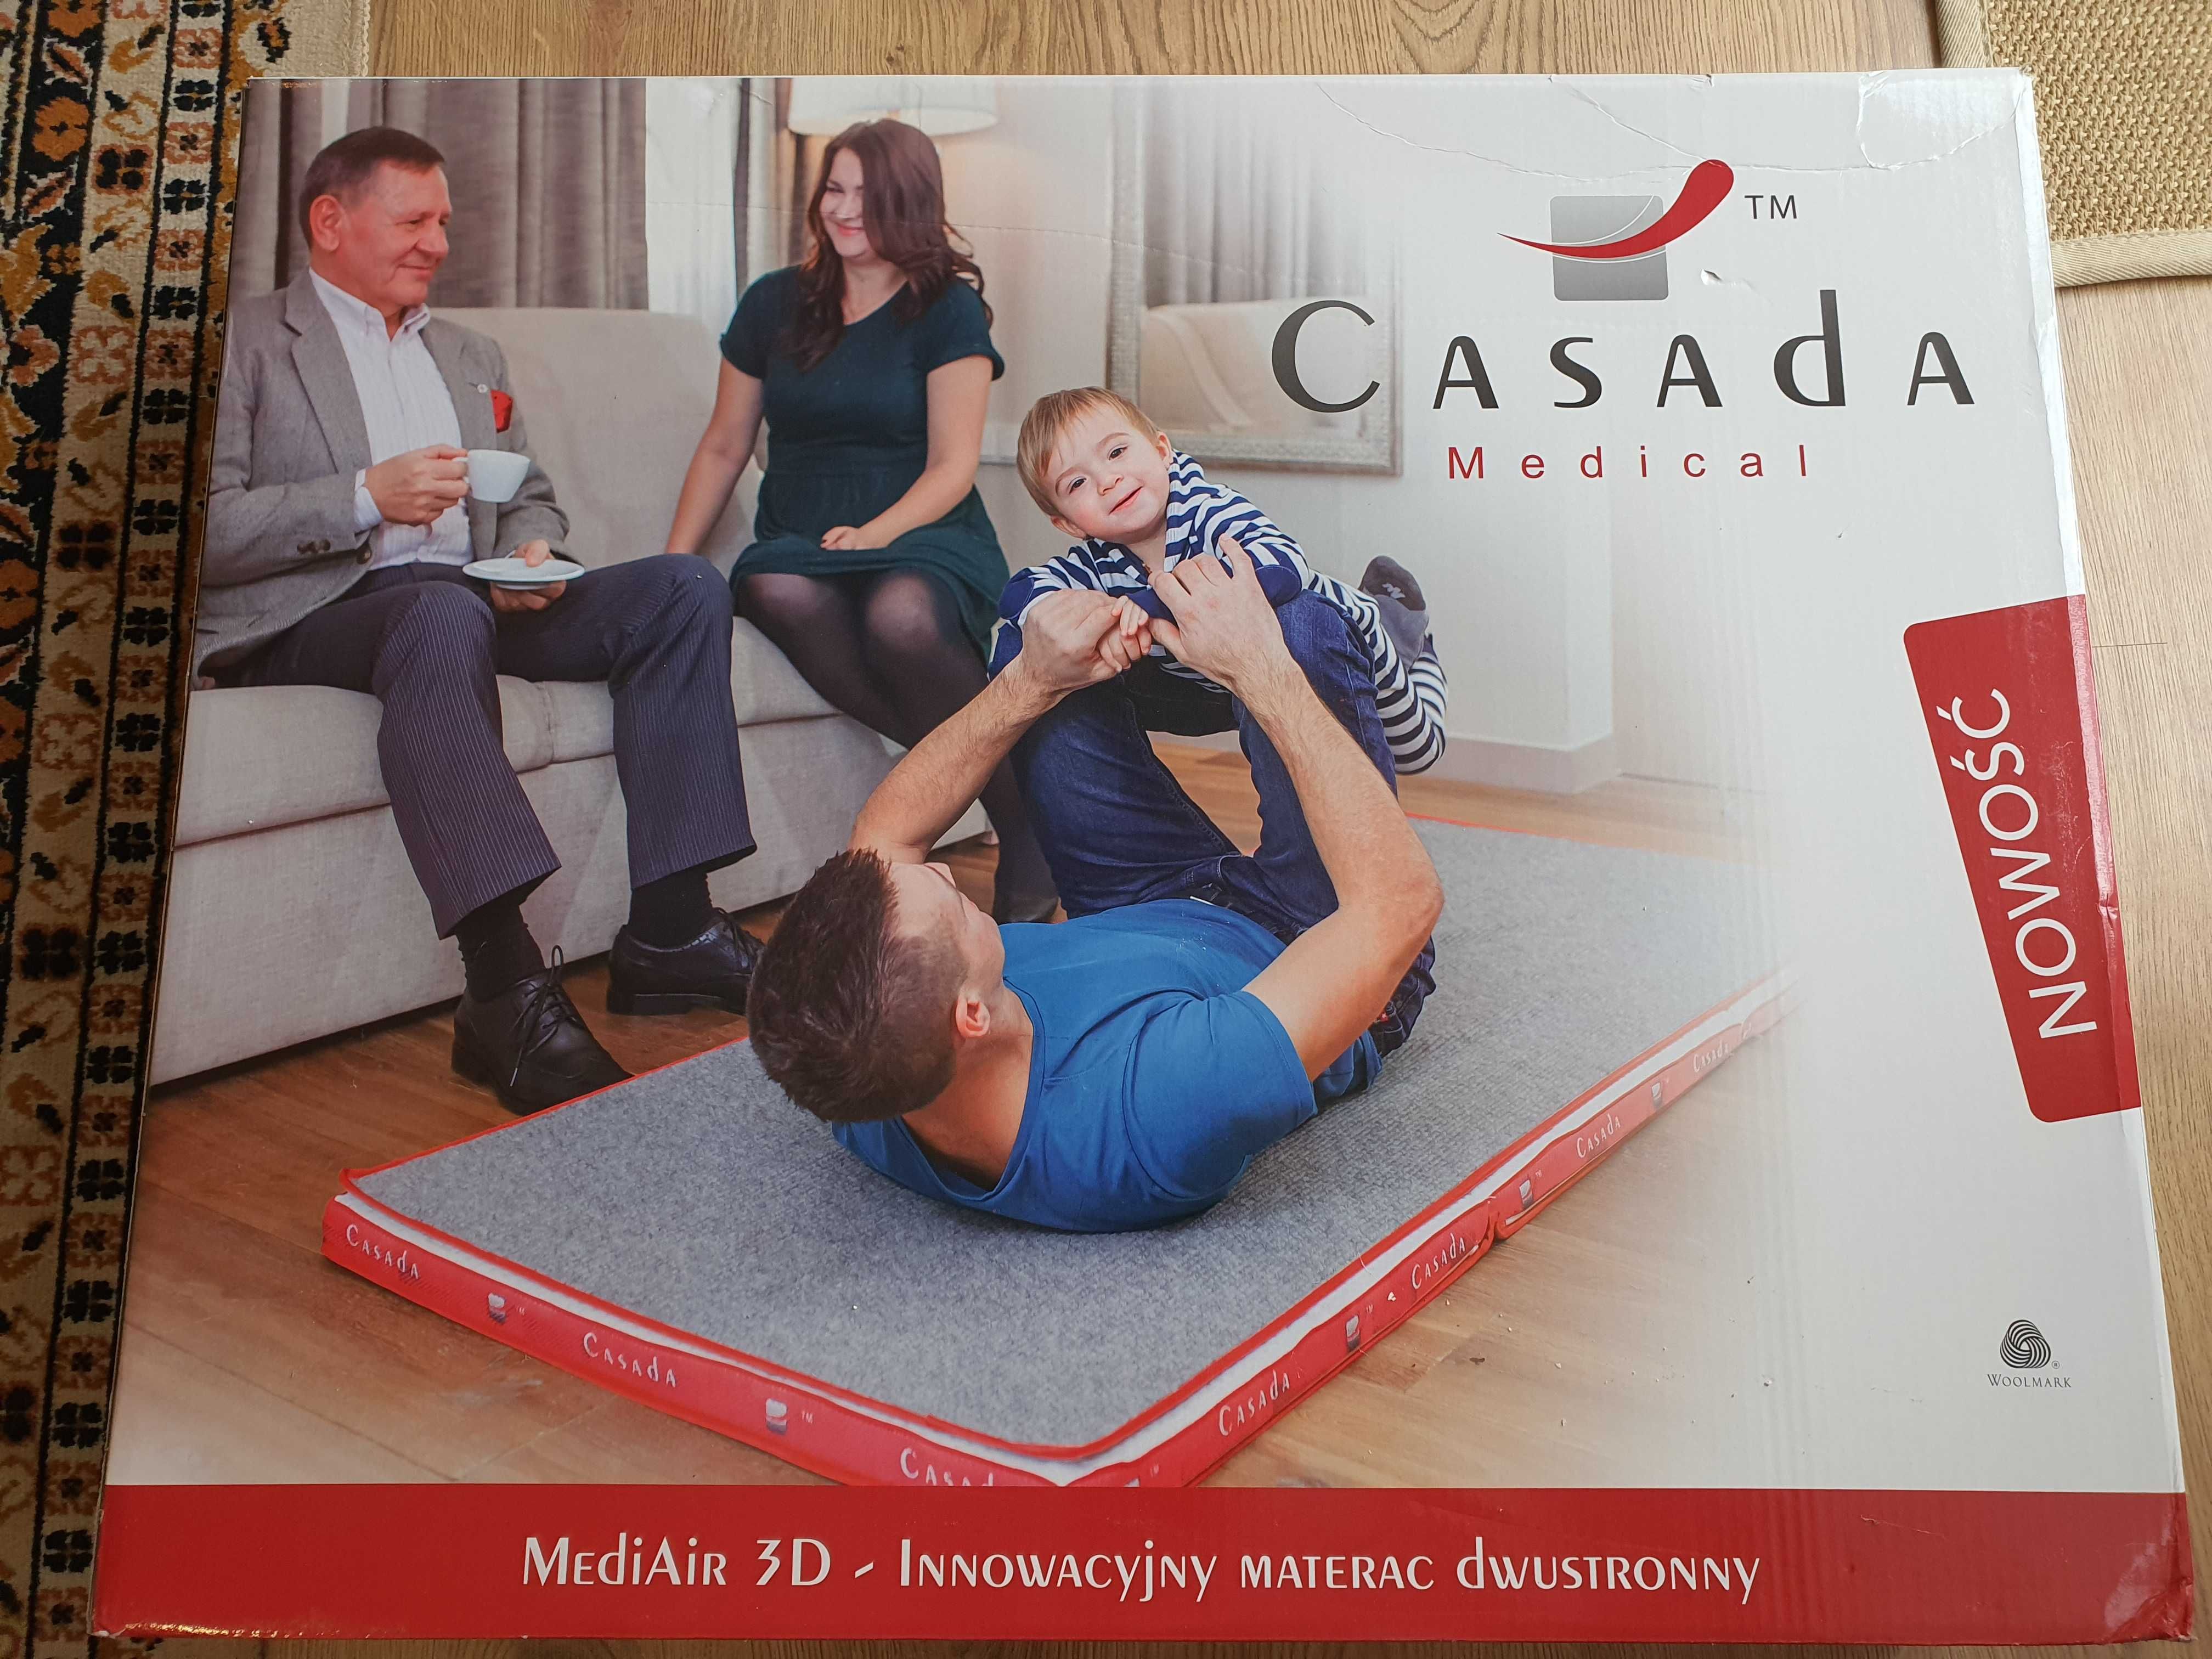 MediAir 3D firmy Casada materac rehabilitacyjny wełniany 80x200 nowy